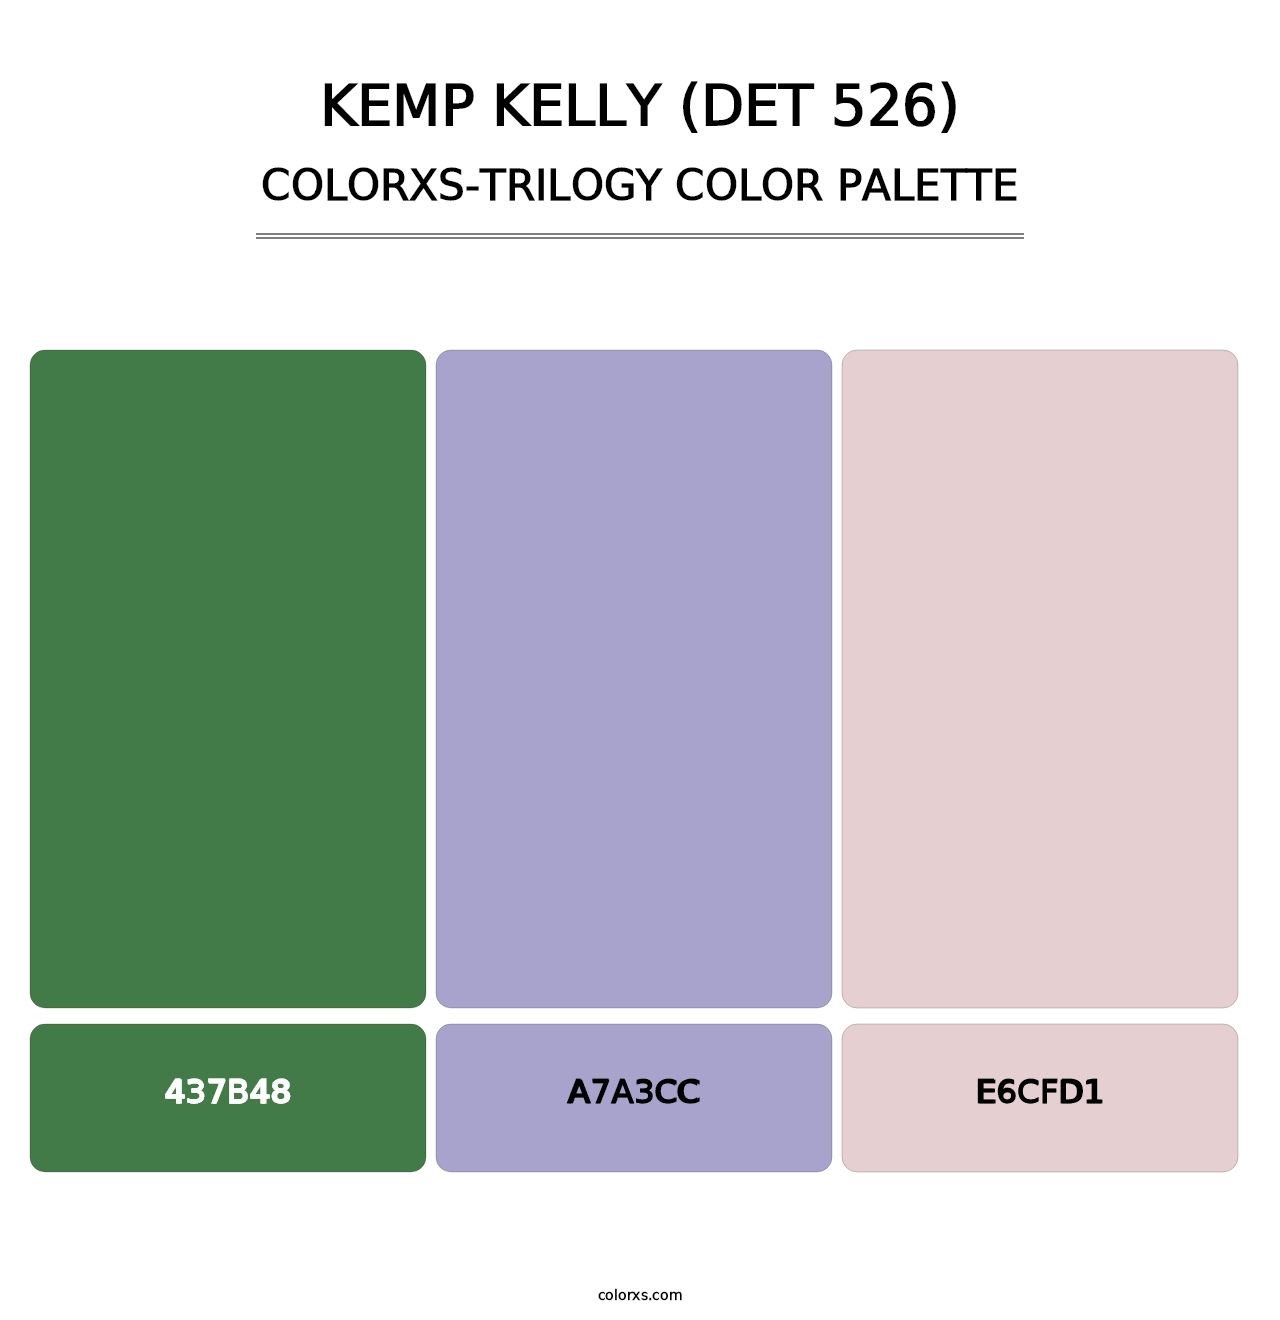 Kemp Kelly (DET 526) - Colorxs Trilogy Palette